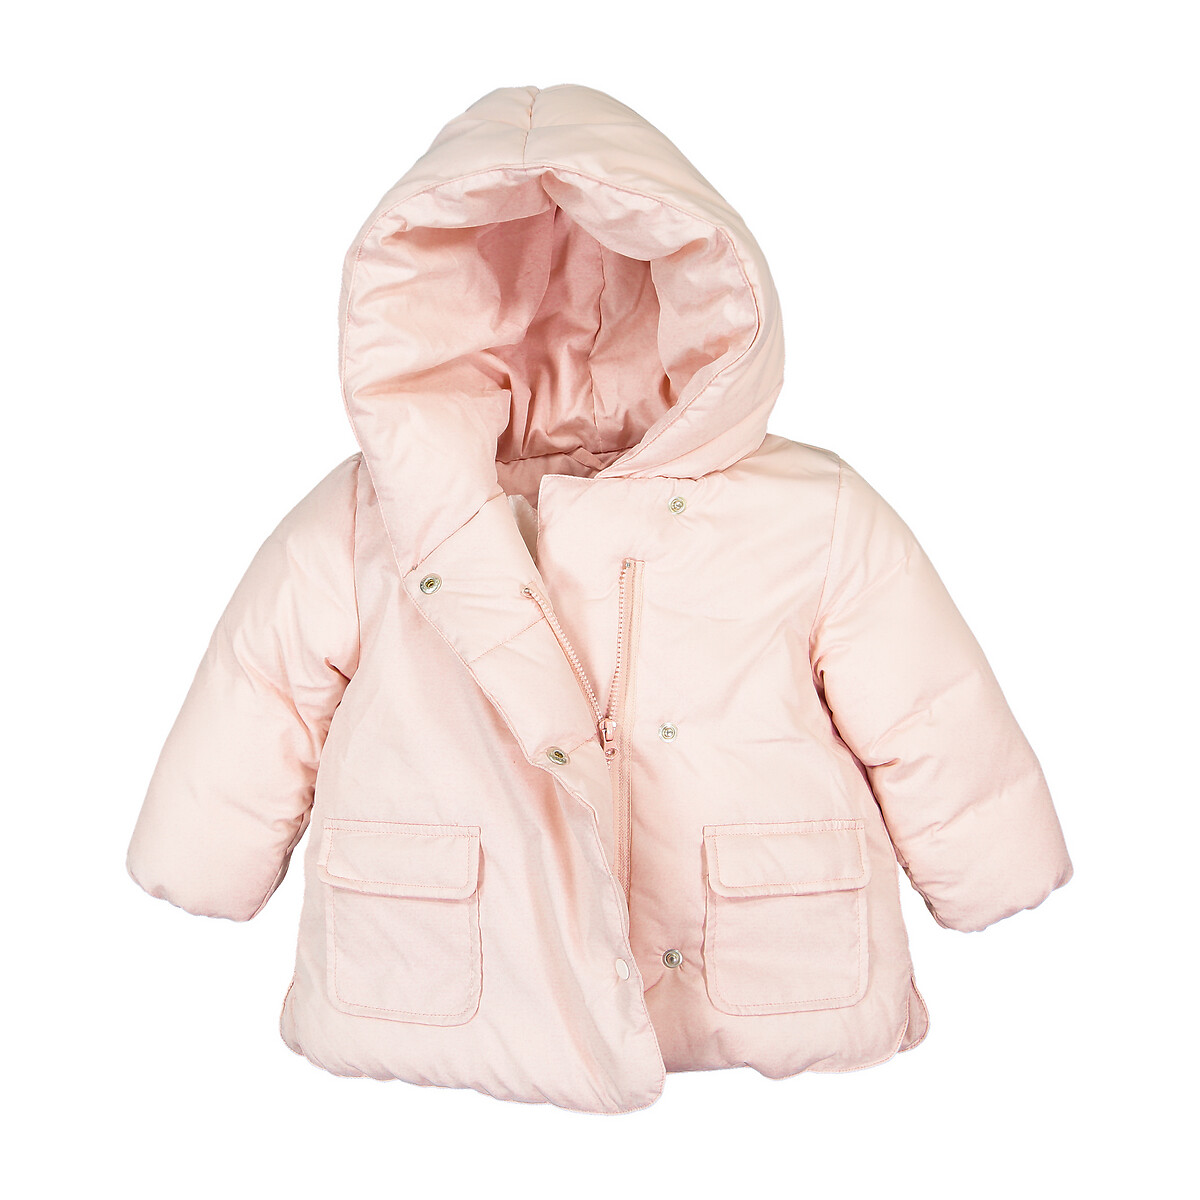 Куртка La Redoute Стеганая утепленная с капюшоном 3 мес-4 года 4 года - 102 см розовый, размер 4 года - 102 см - фото 2